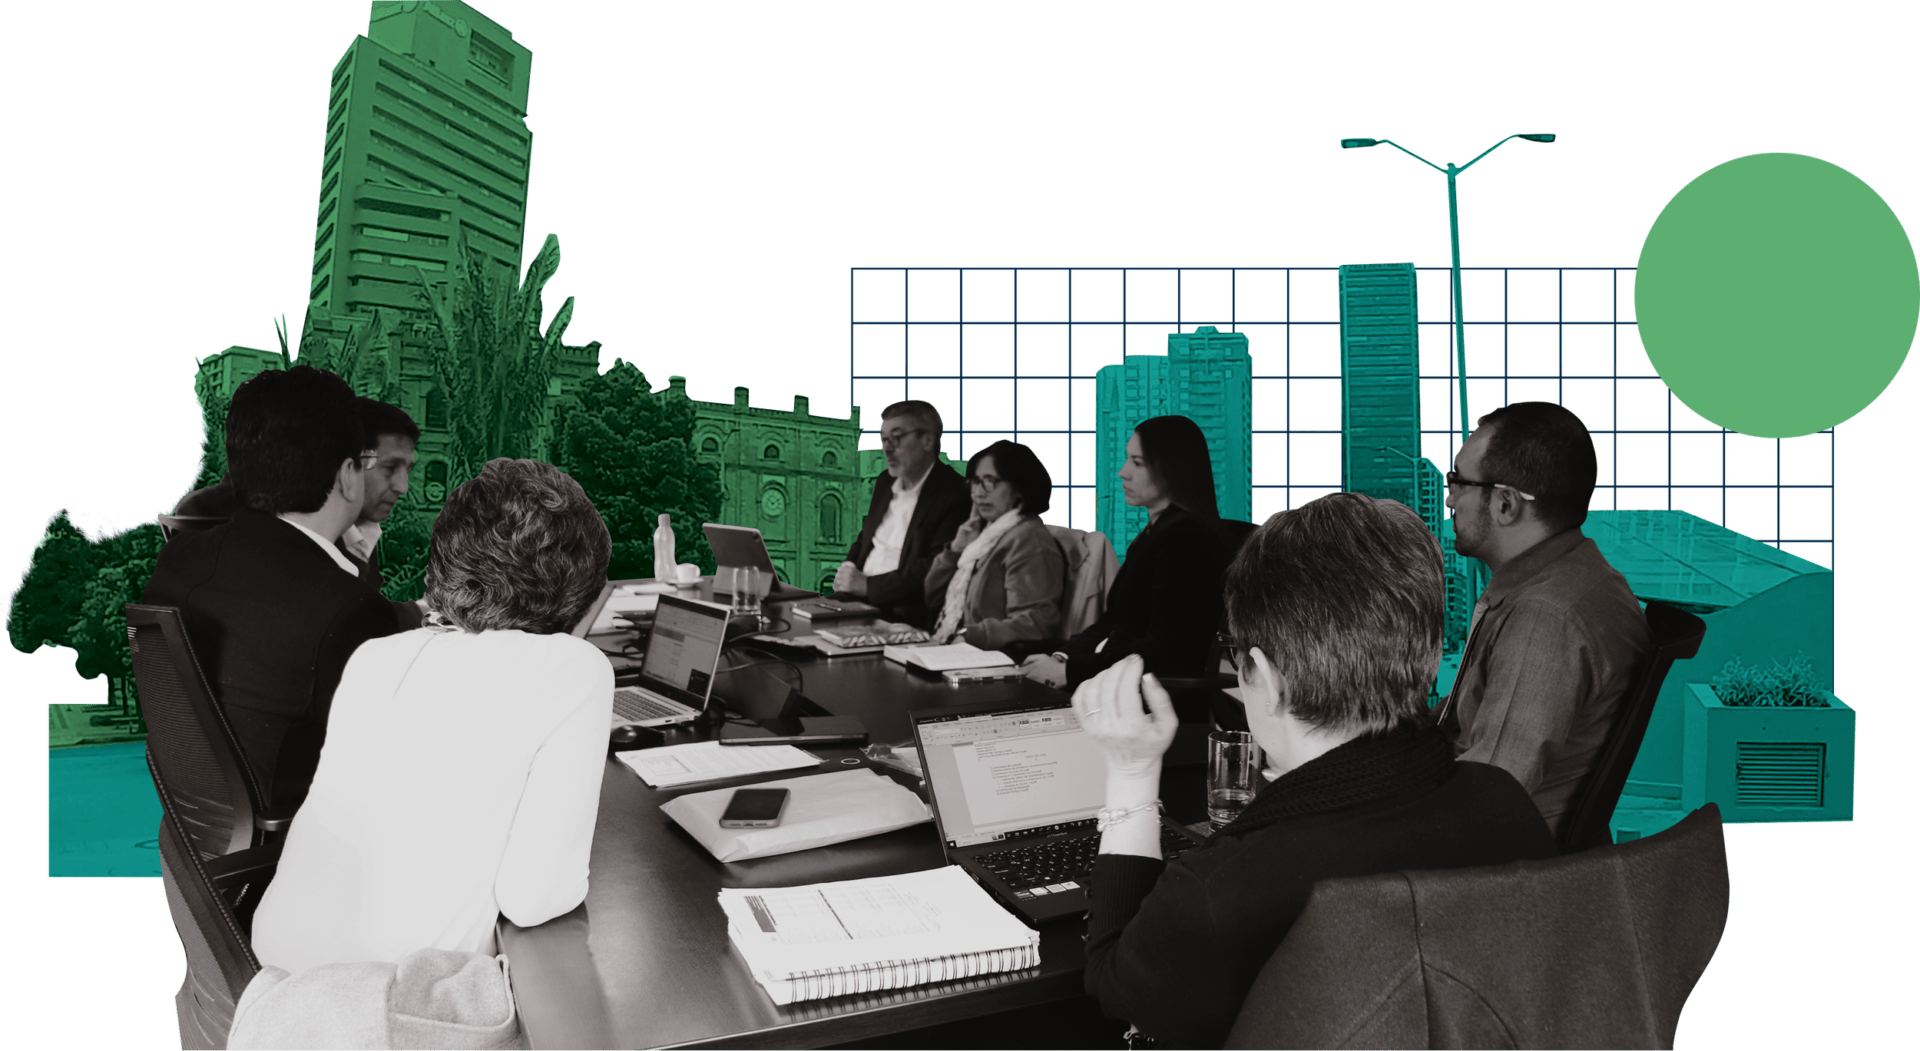 Ilustración de una reunión de negocios con siete profesionales alrededor de una mesa, con un paisaje urbano estilizado de fondo.